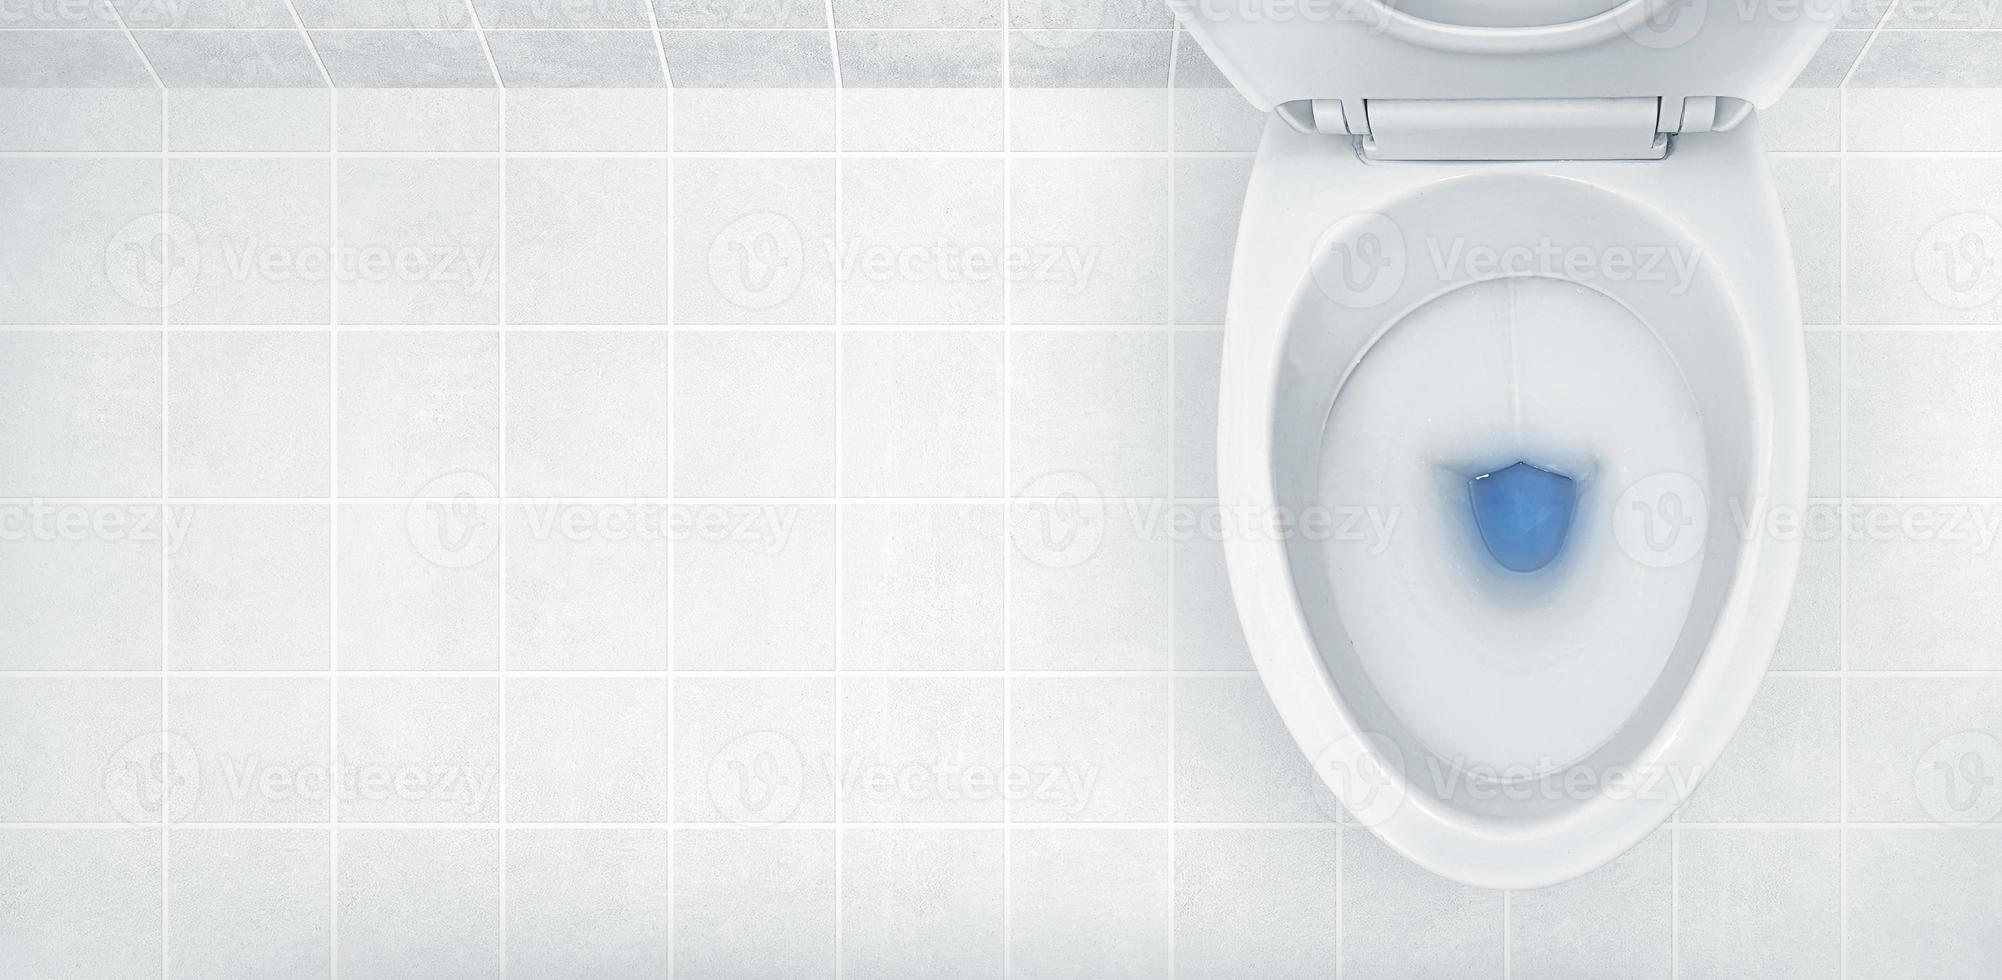 vista superior de la taza del inodoro, lavado de detergente azul en ella foto